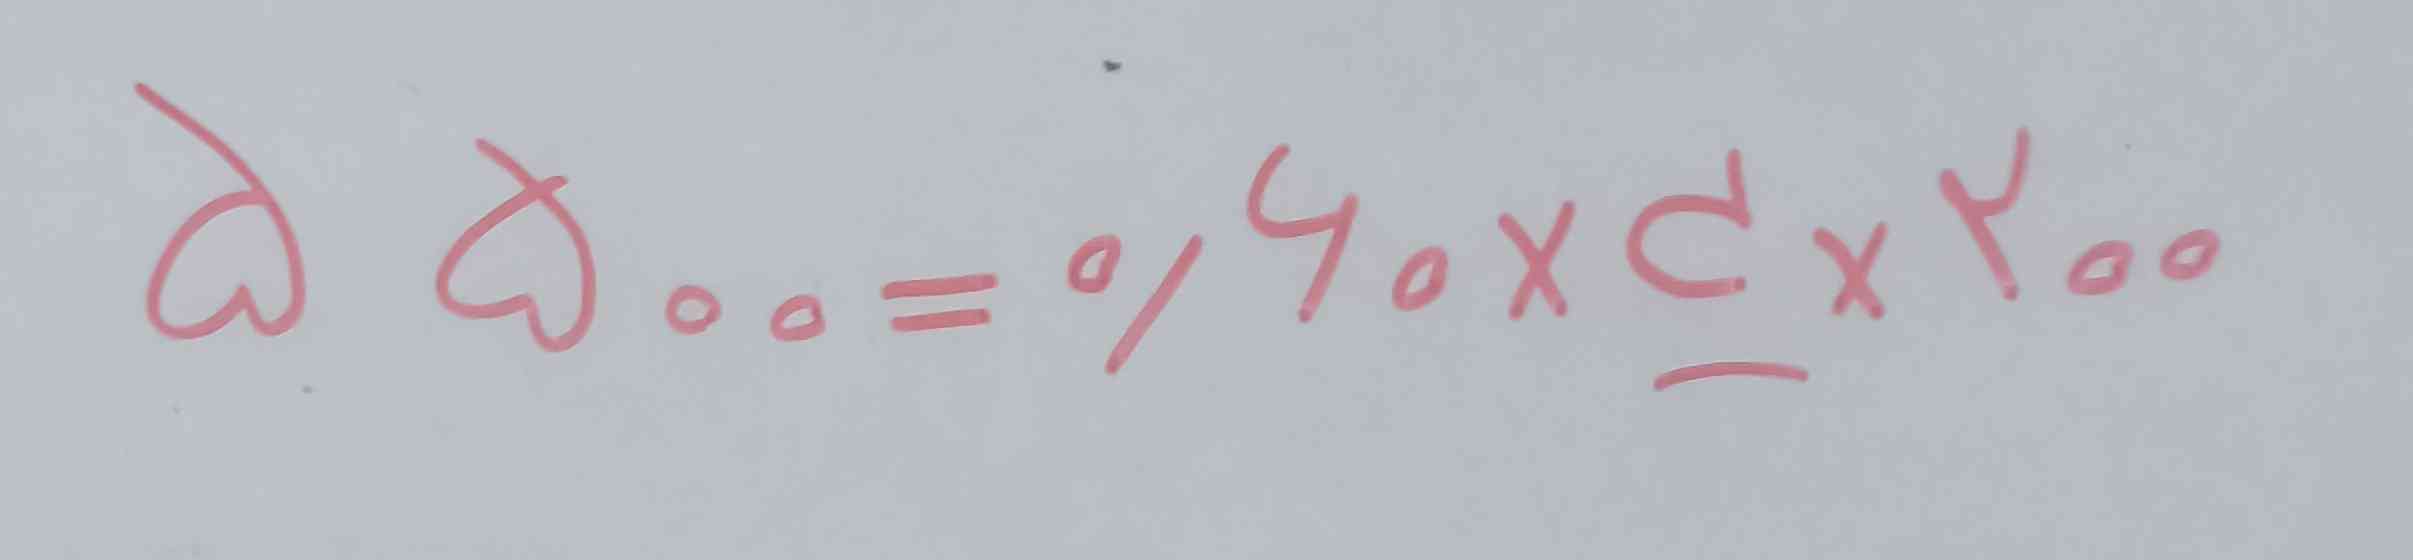 بچه ها این معادله رو چطور حل کنم